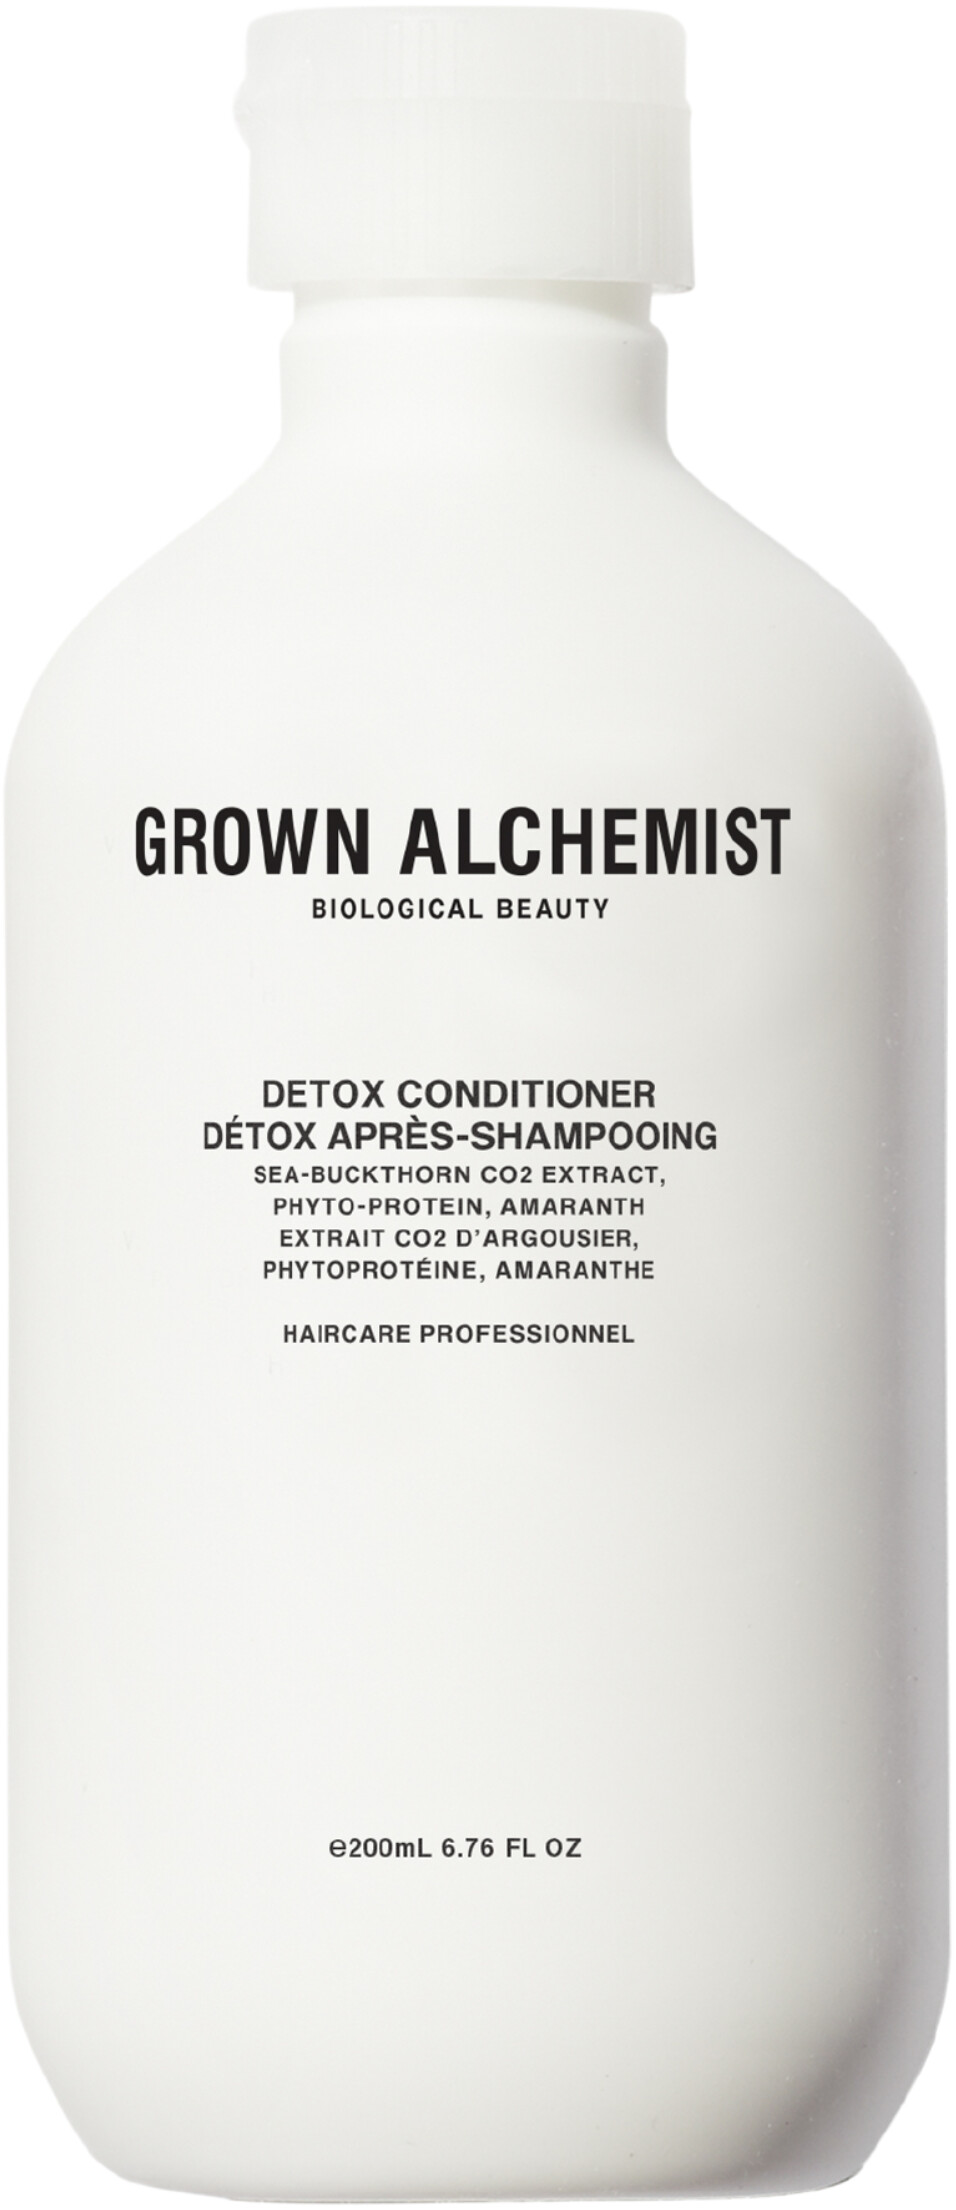 Grown Alchemist Detox Conditioner 200ml